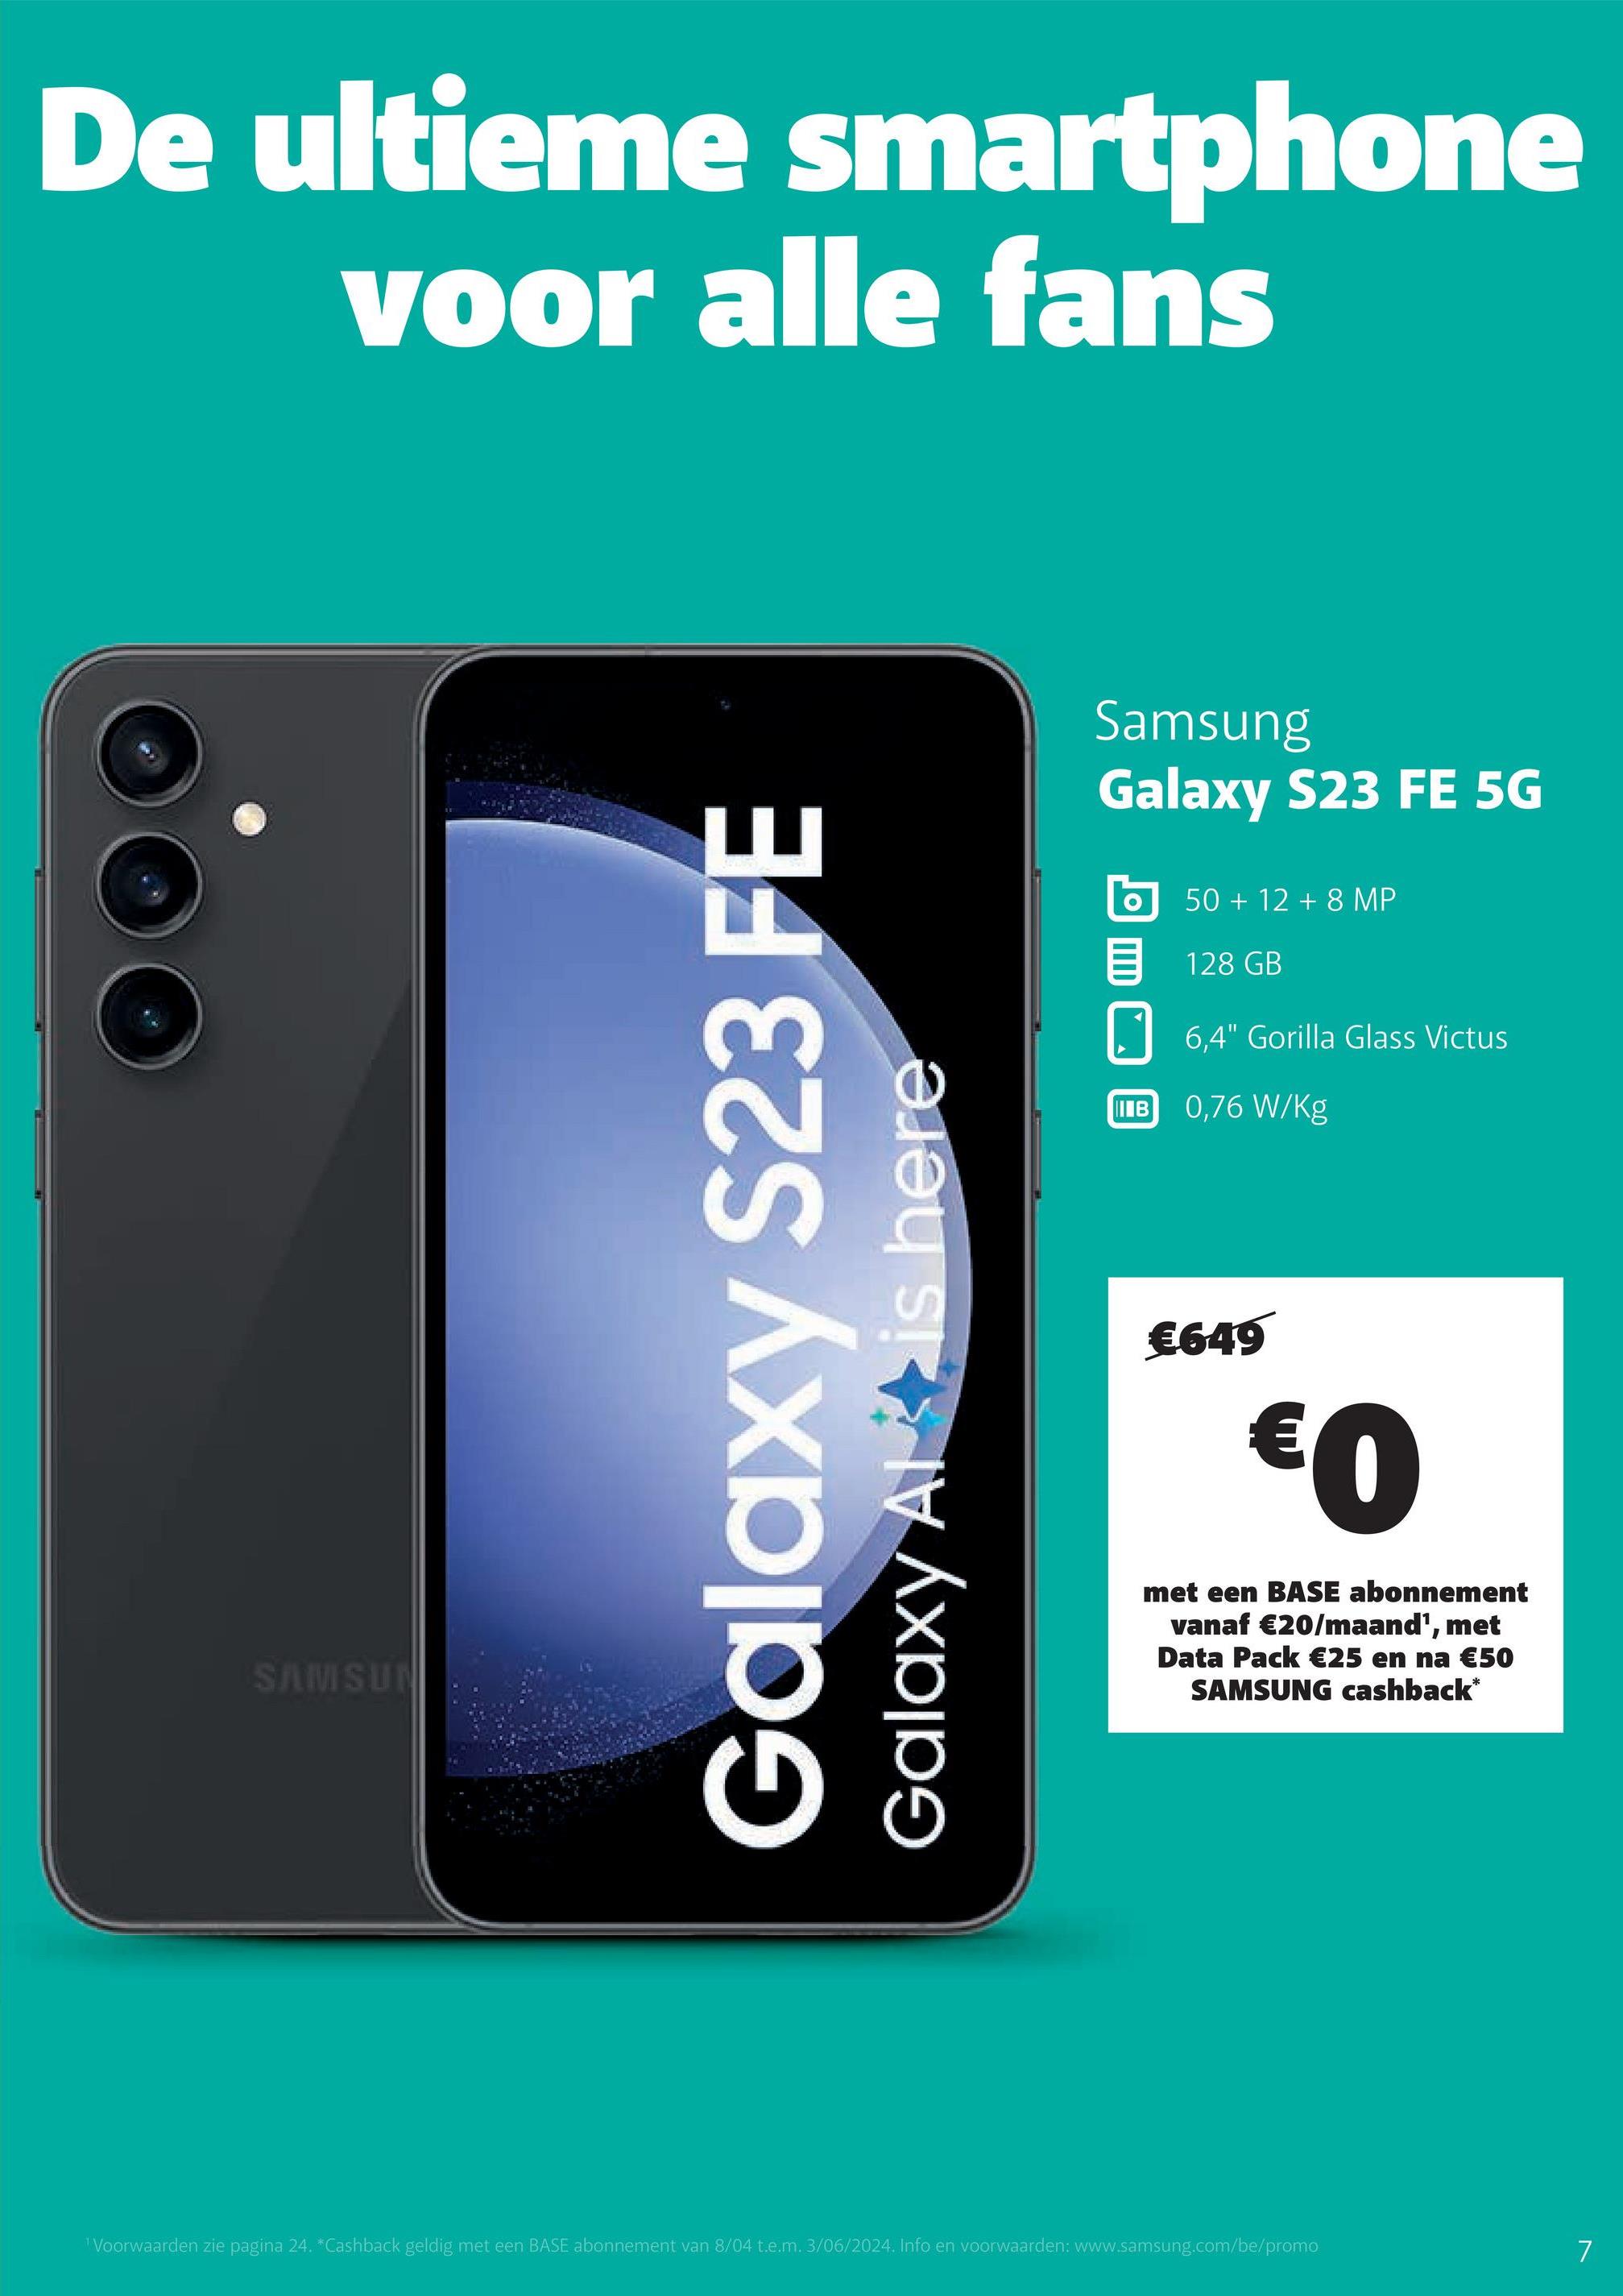 De ultieme smartphone
voor alle fans
SAMSUN
Galaxy S23 FE
Galaxy Alt is here
Samsung
Galaxy S23 FE 5G
50+ 12 +8 MP
目 128 GB
IIIB
6,4" Gorilla Glass Victus
0,76 W/Kg
€649
€0
met een BASE abonnement
vanaf €20/maand', met
Data Pack €25 en na €50
SAMSUNG cashback*
"Voorwaarden zie pagina 24. *Cashback geldig met een BASE abonnement van 8/04 t.e.m. 3/06/2024. Info en voorwaarden: www.samsung.com/be/promo
7